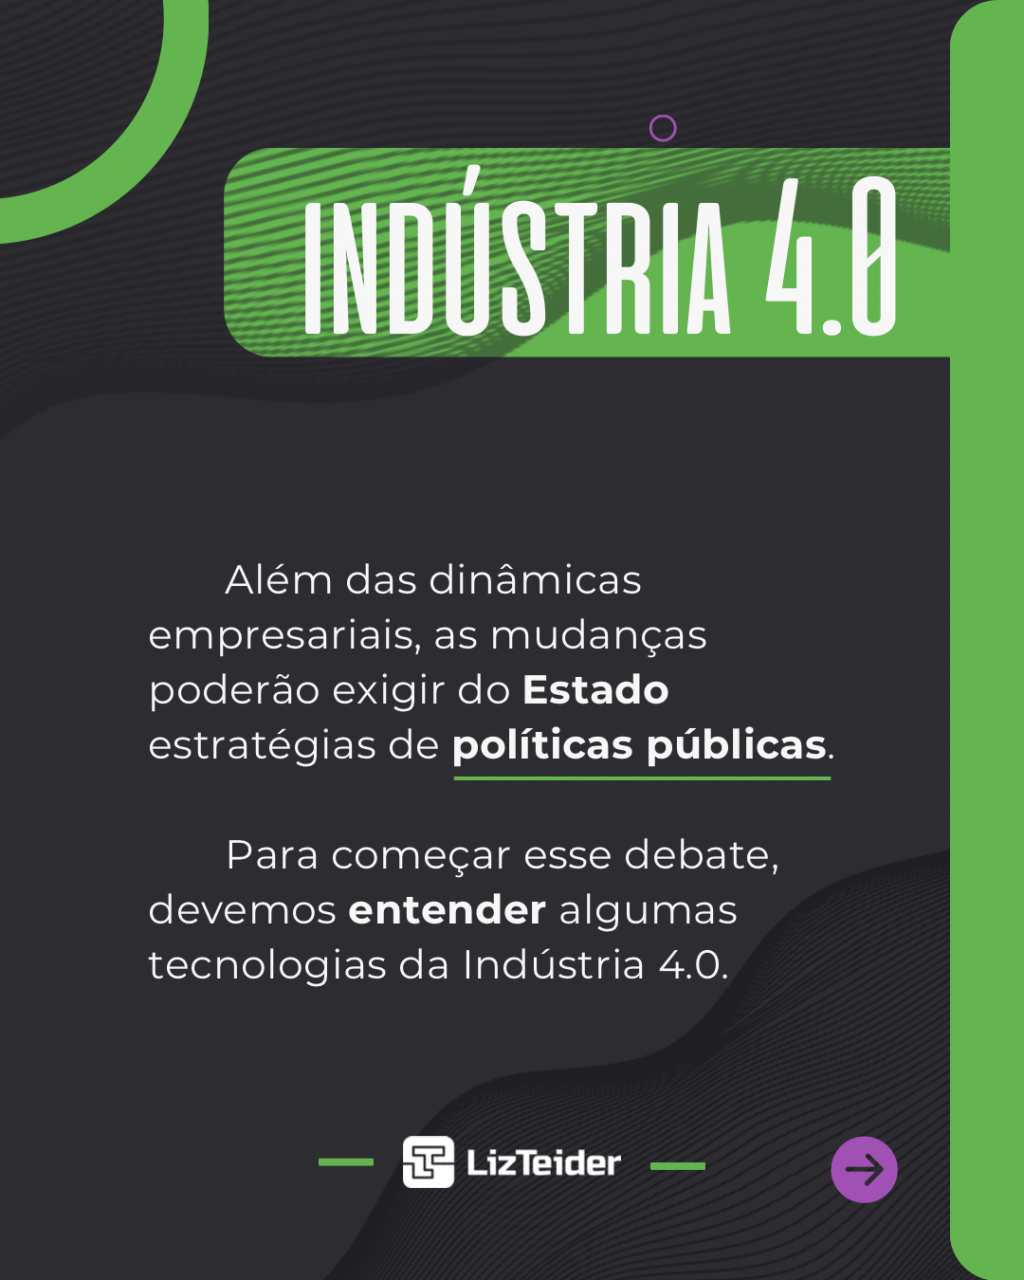 Indústria 4.0 pode exigir do Estado estratégias de políticas públicas